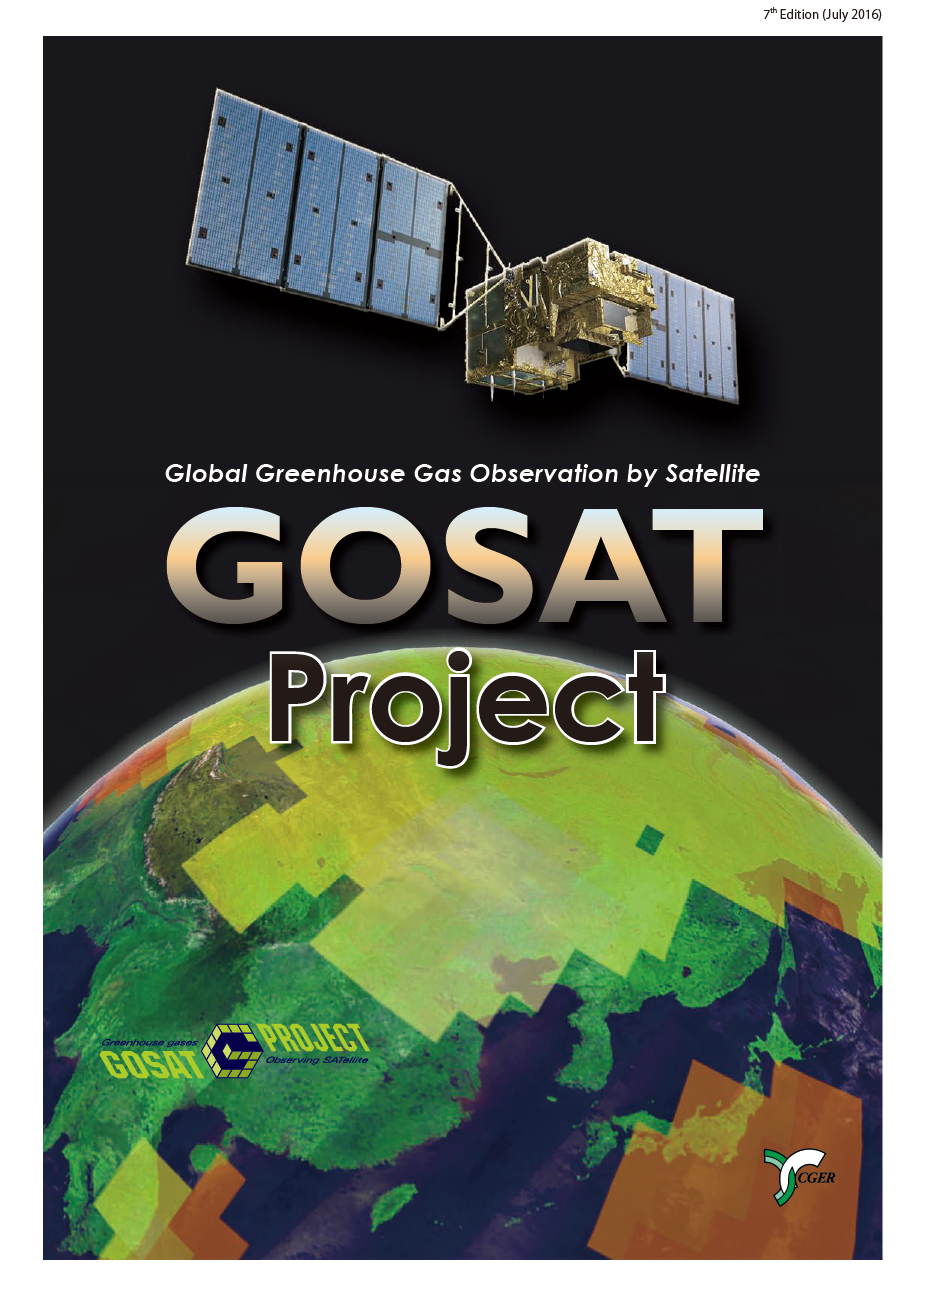 GOSATパンフレット第7版を掲載しました